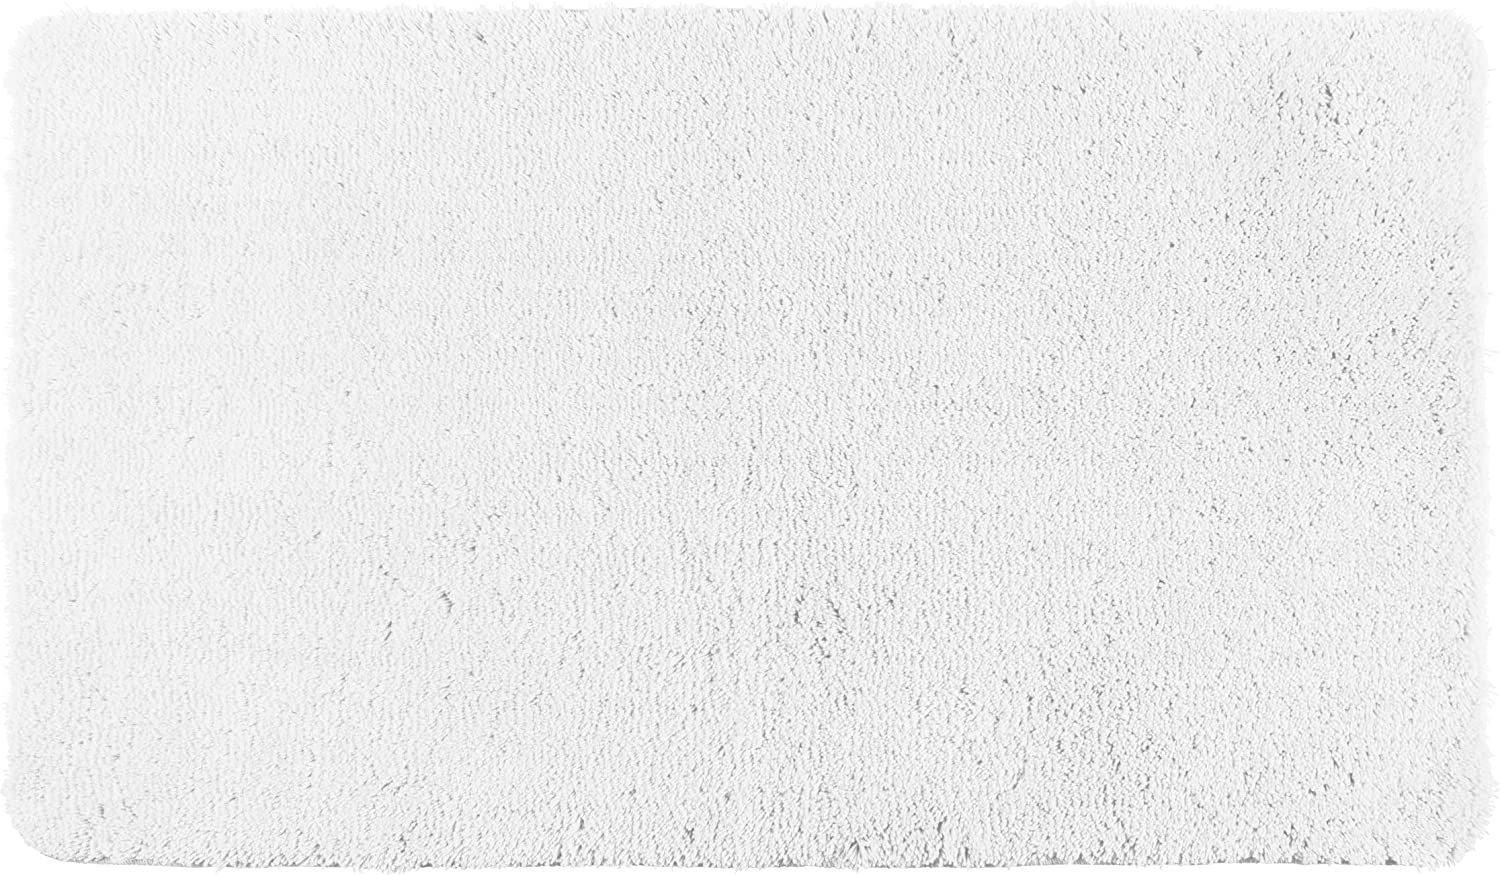 Badteppich Belize Weiß, 55 x 65 cm - Badematte, sicher, flauschig, fusselfrei, Polyester, 55 x 65 cm, Weiß